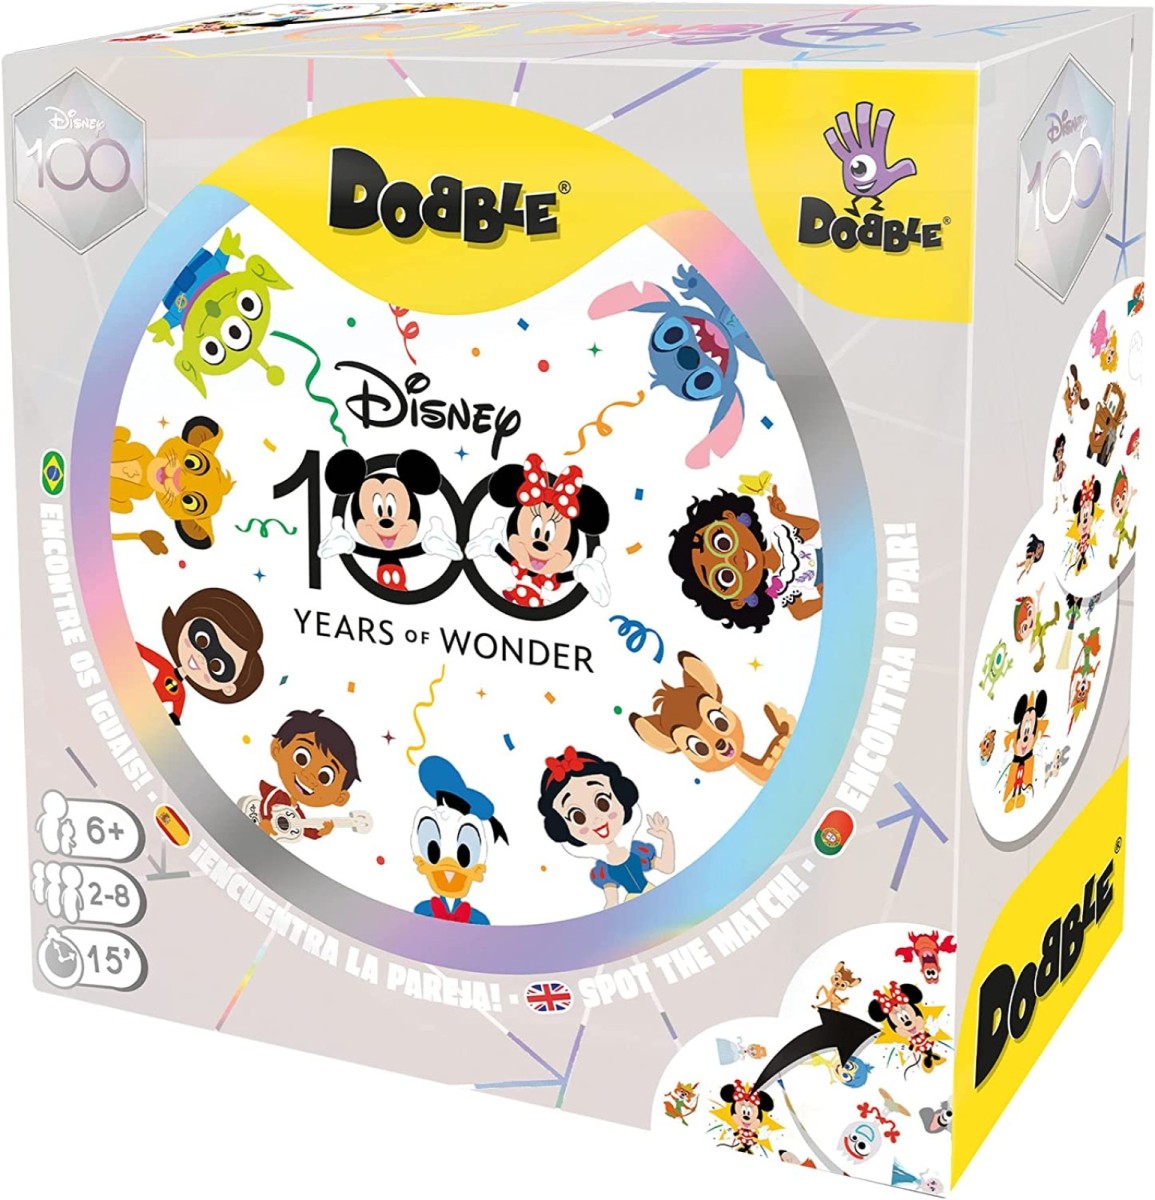 Dobble Disney 100th Anniversary - Plaza Toymaster